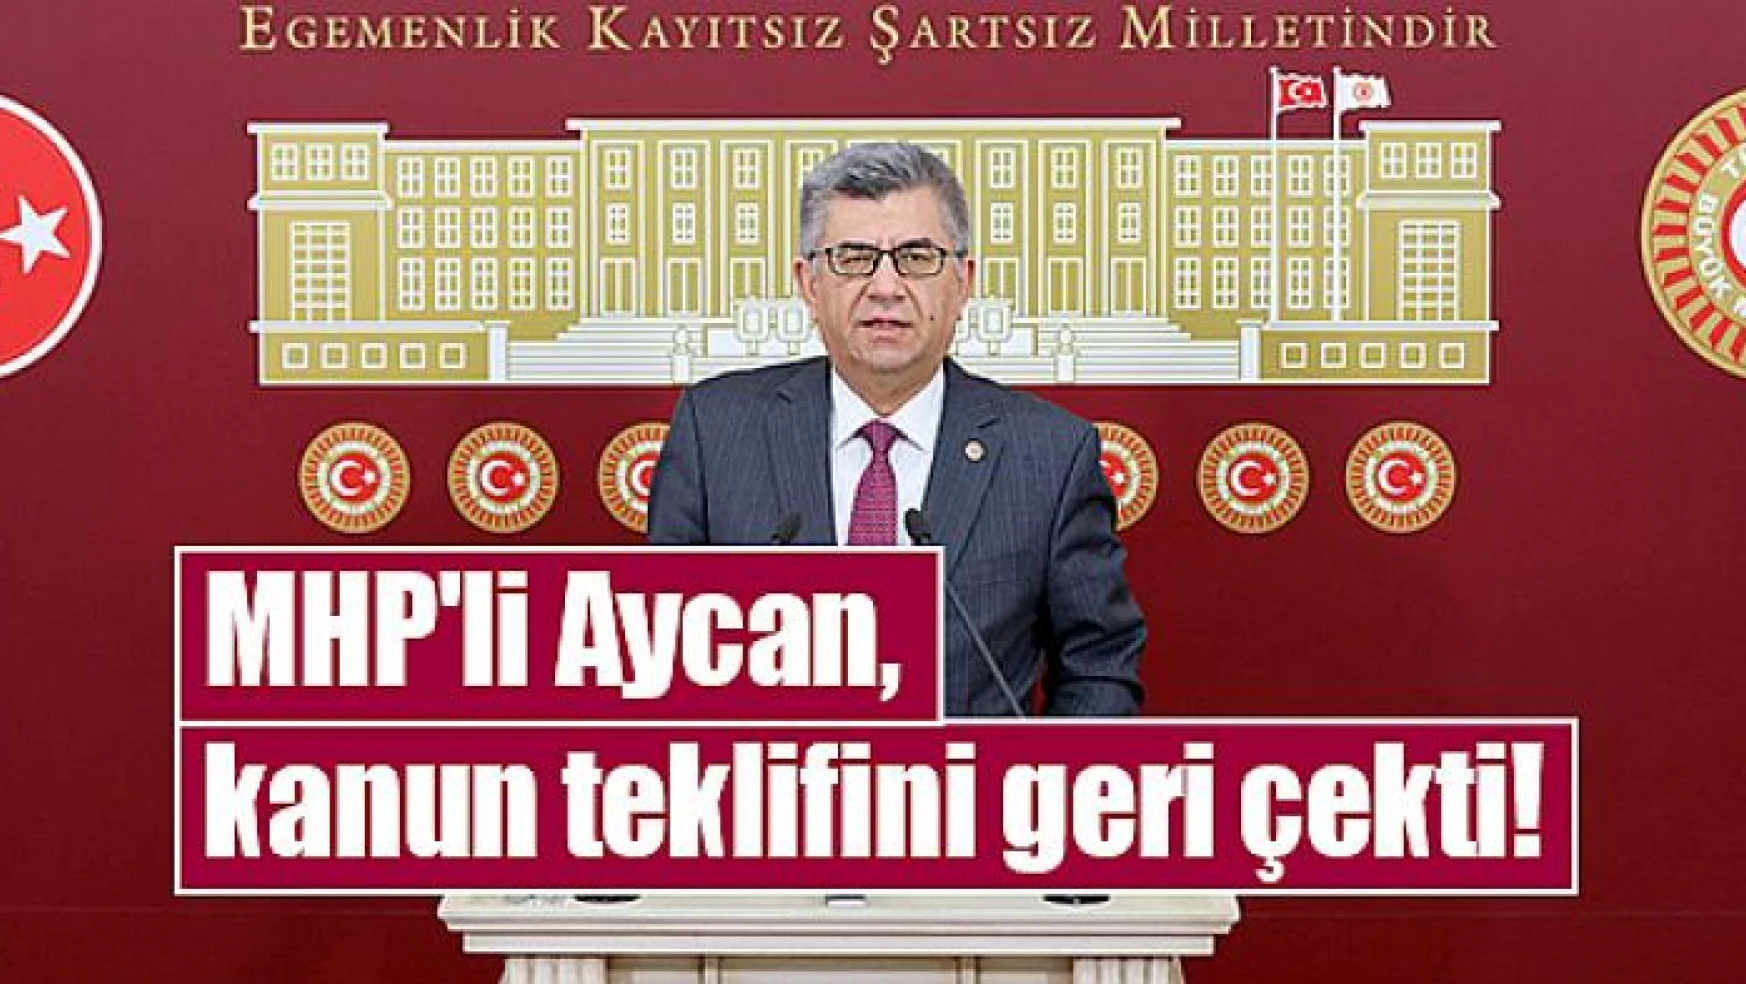 MHP'li Aycan, kanun teklifini geri çekti